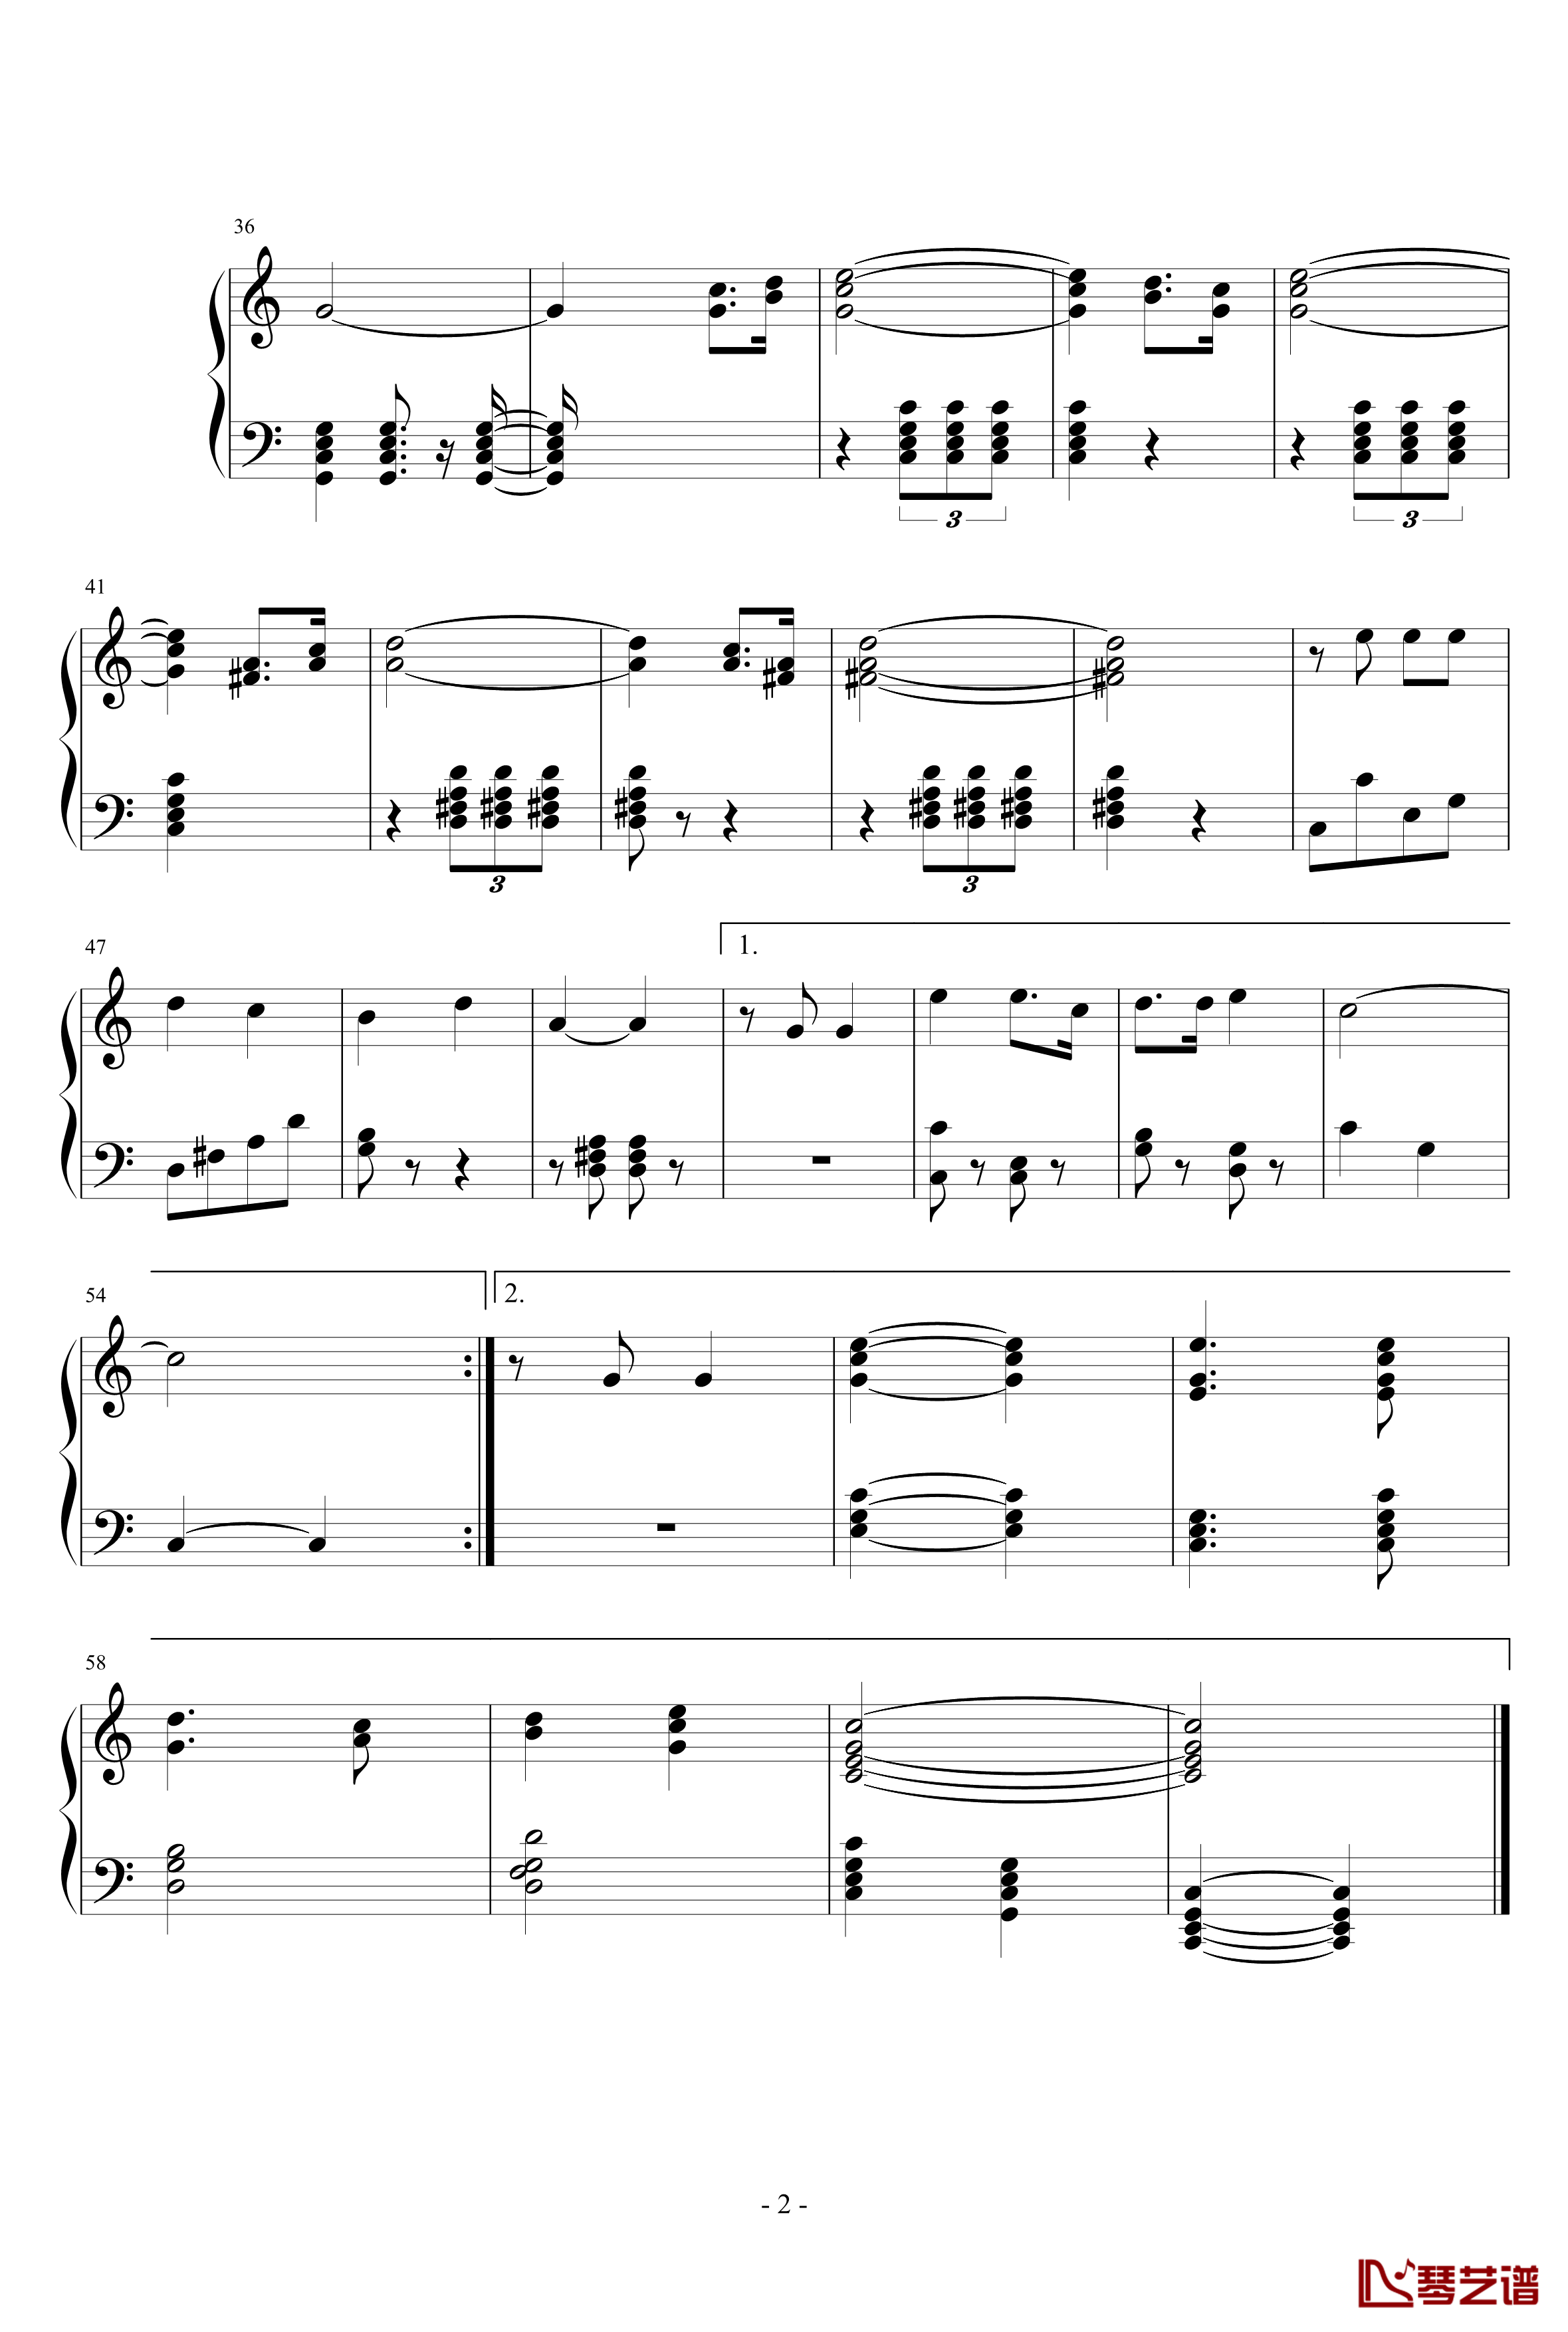 新星升起的地方钢琴谱-齐齐哈尔市实验中学校歌-校歌